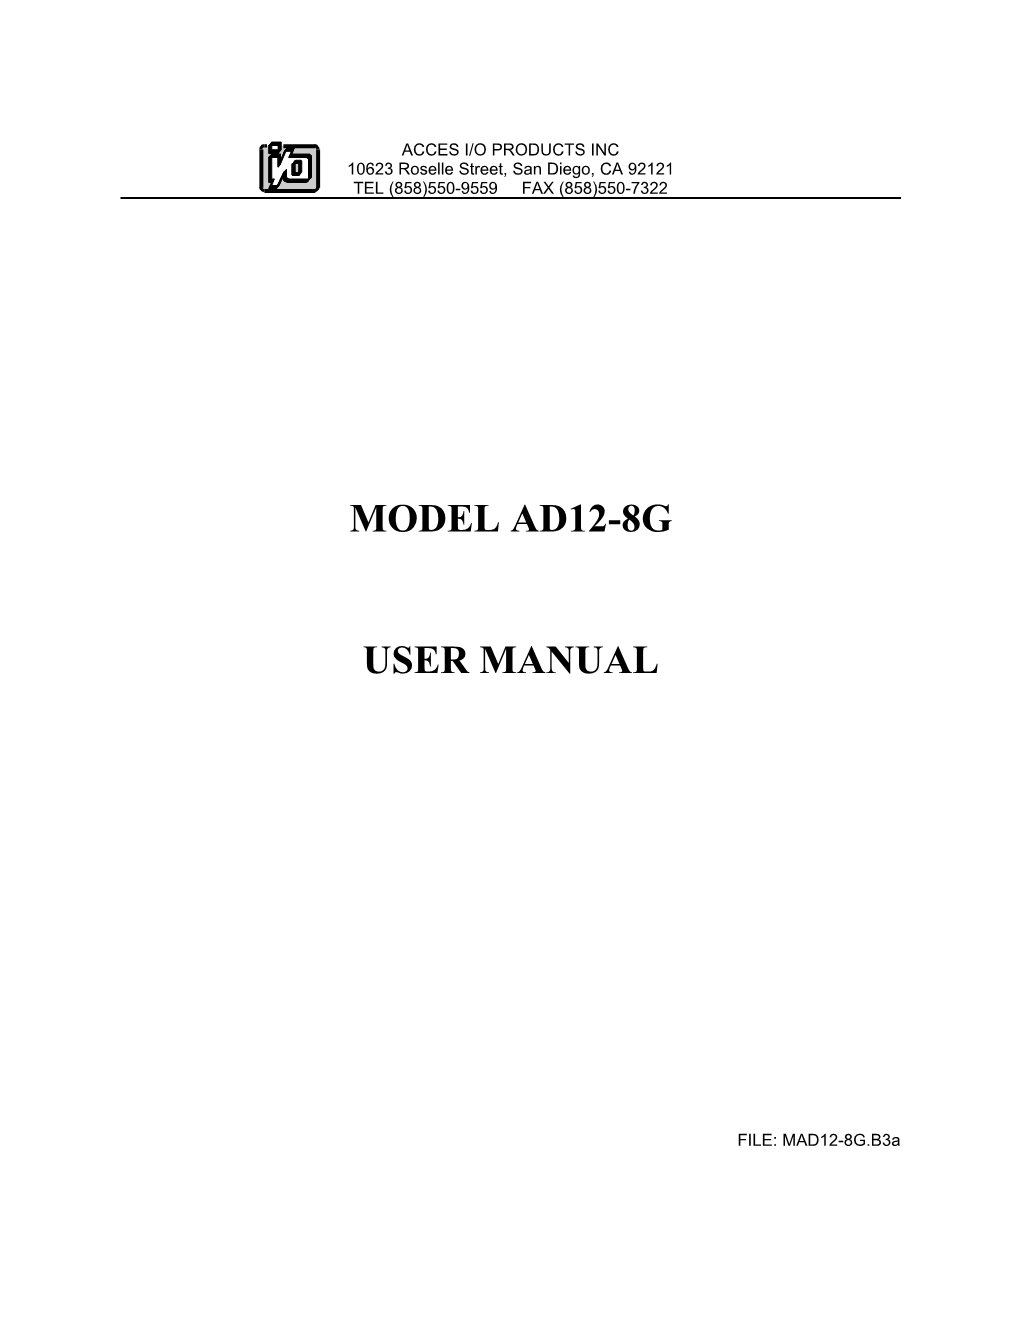 AD12-8G Manual